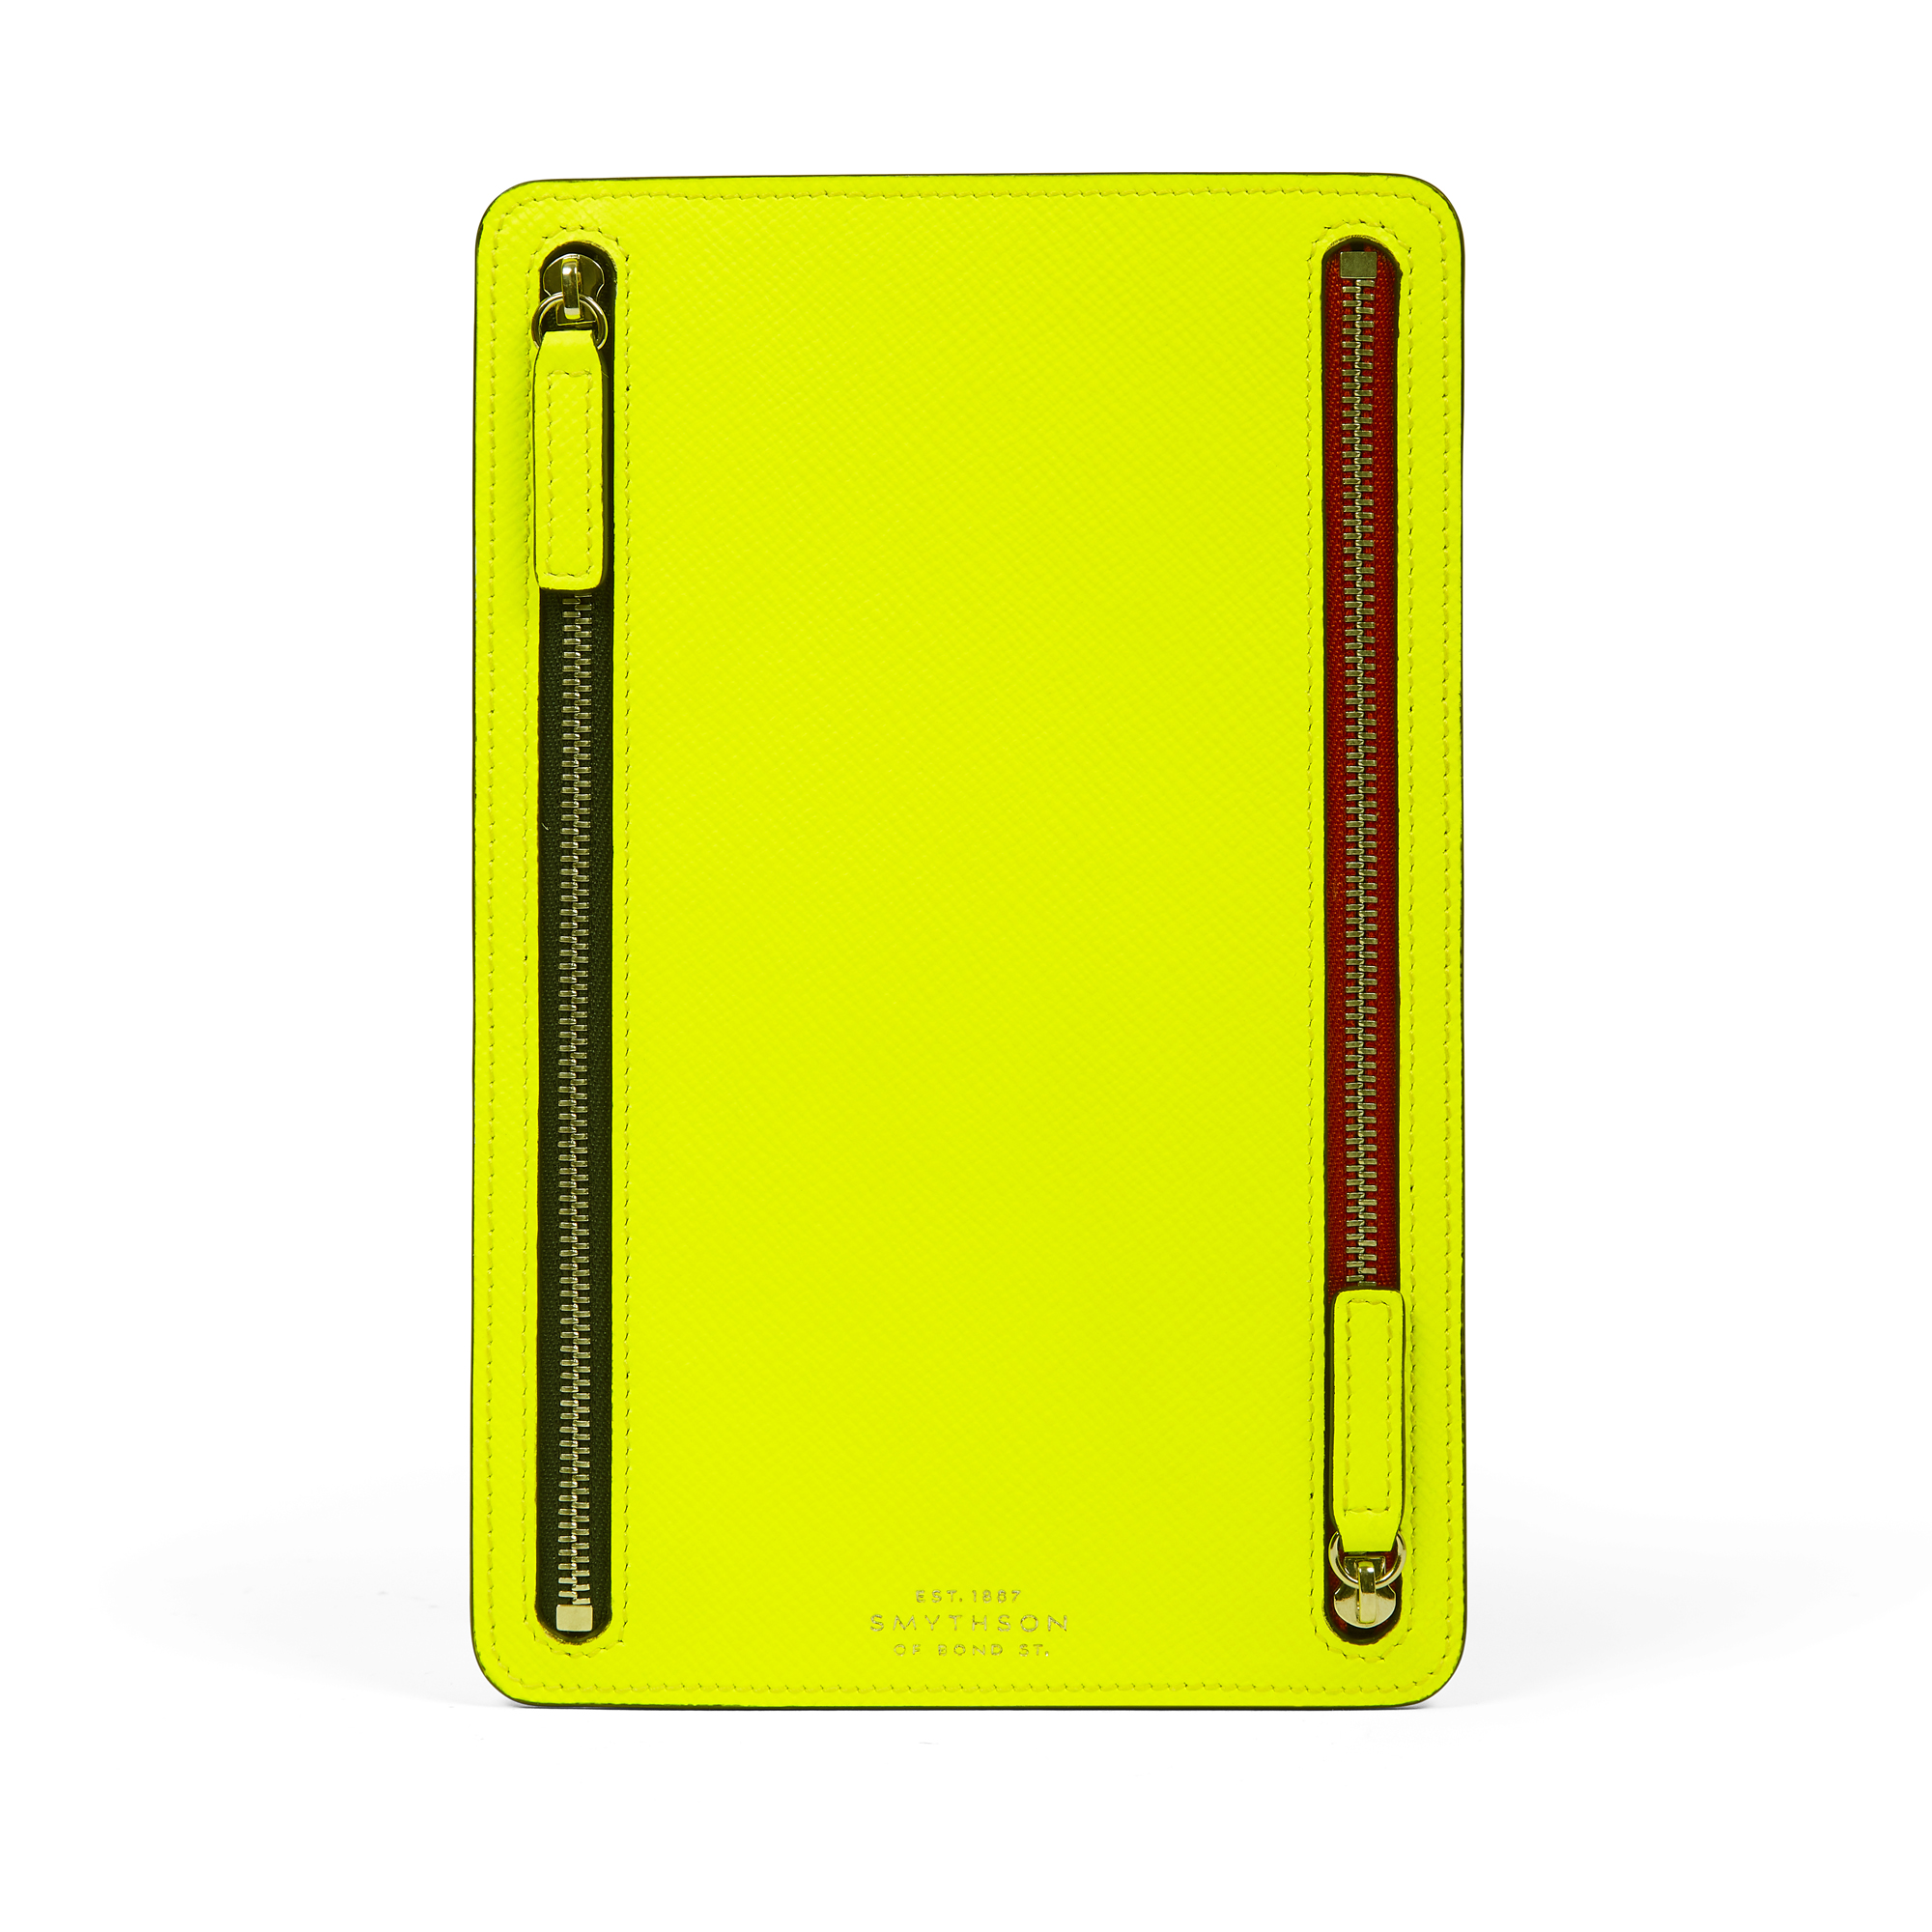 Panamaレザーマルチジップケース in neon yellow | Smythson